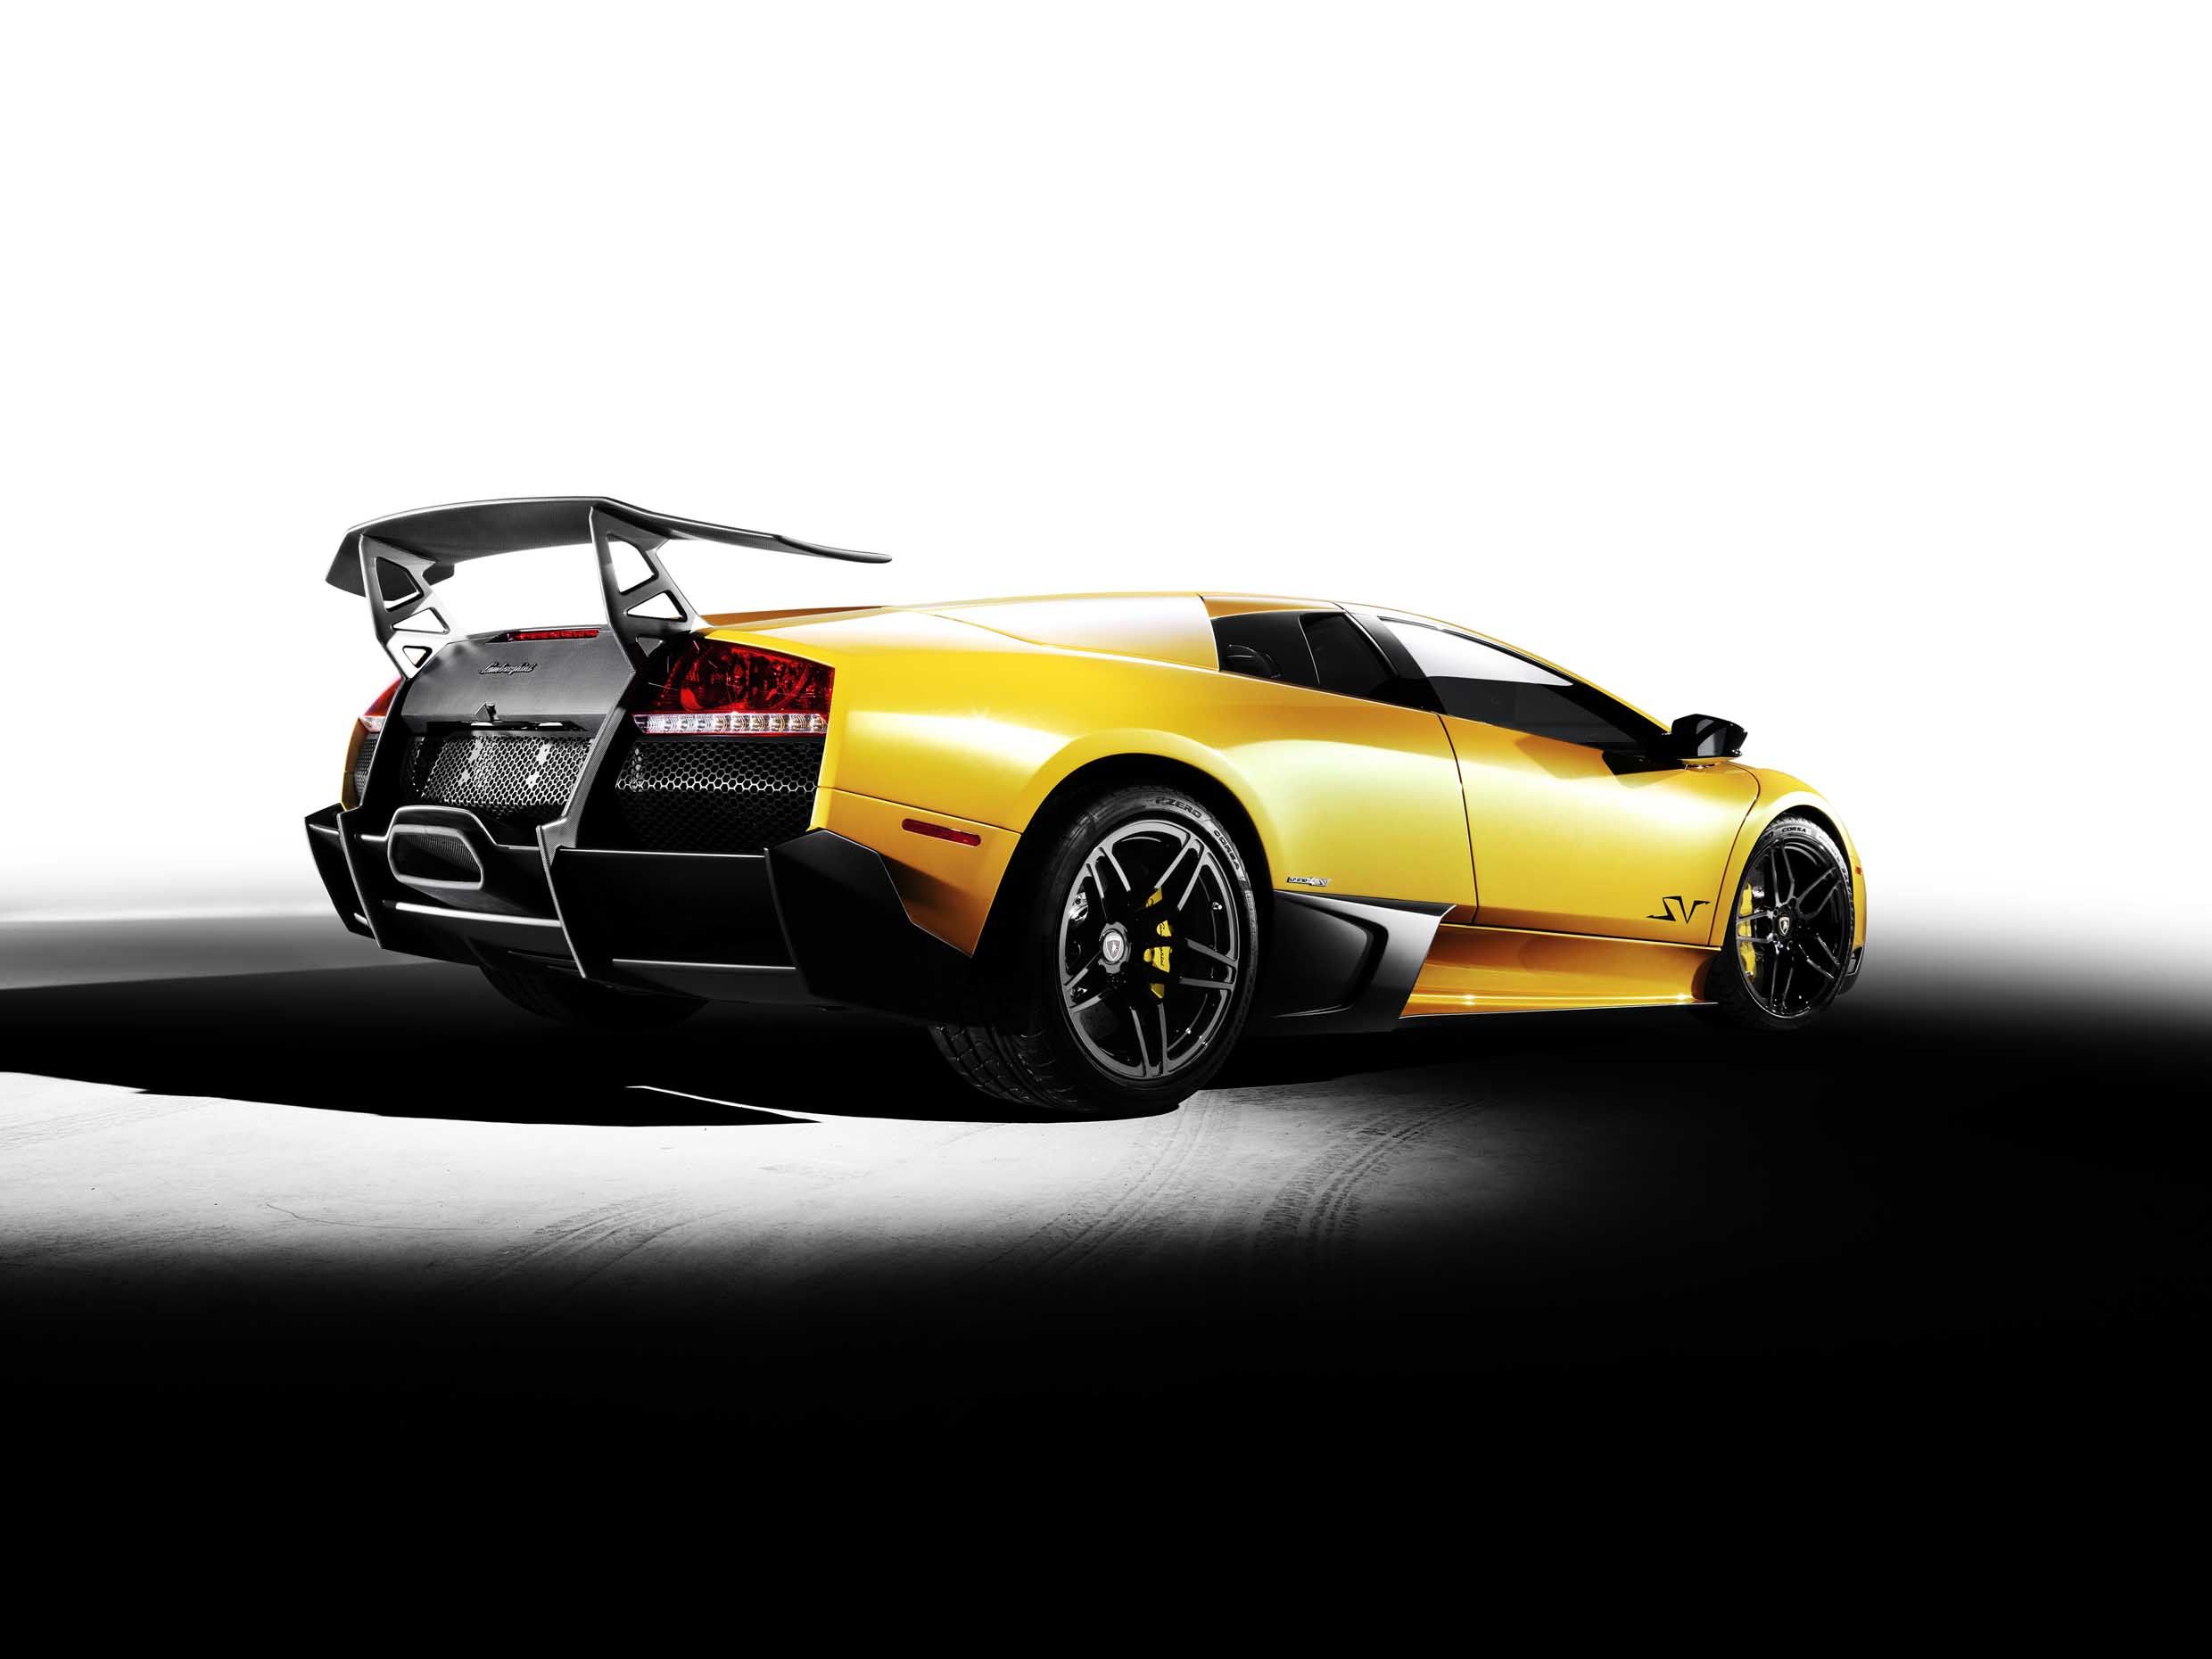 cars, sports, Lamborghini, vehicles, Lamborghini Murcielago, italian cars - desktop wallpaper